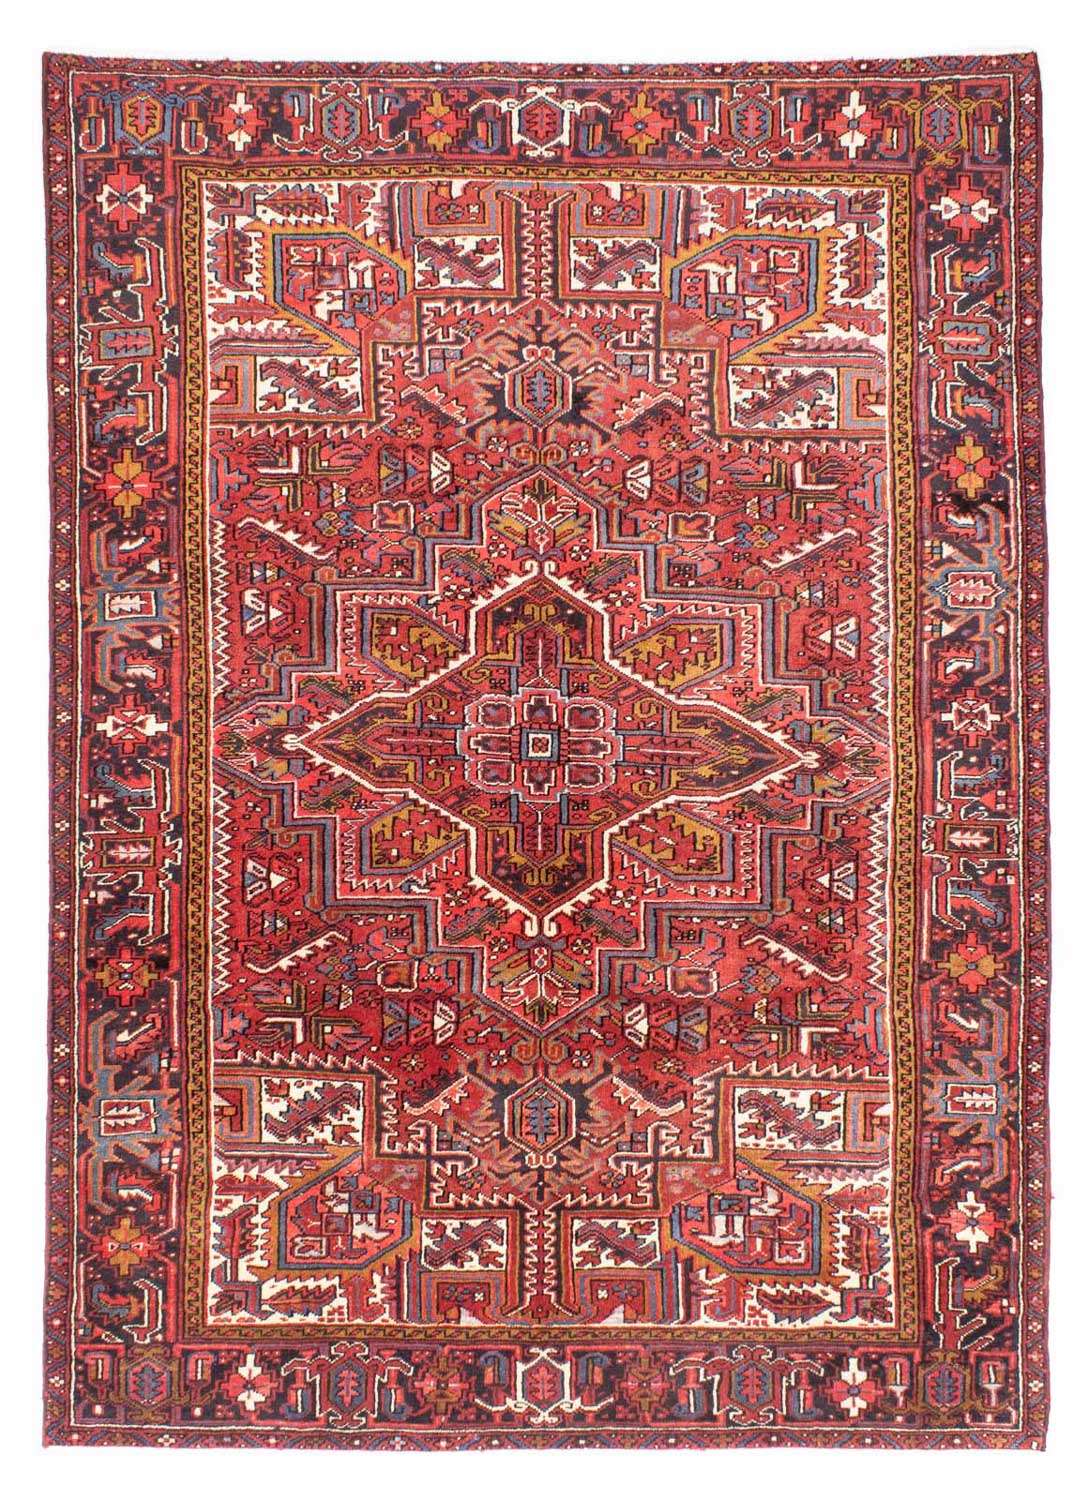 Alfombra persa - Nómada - 304 x 213 cm - rojo